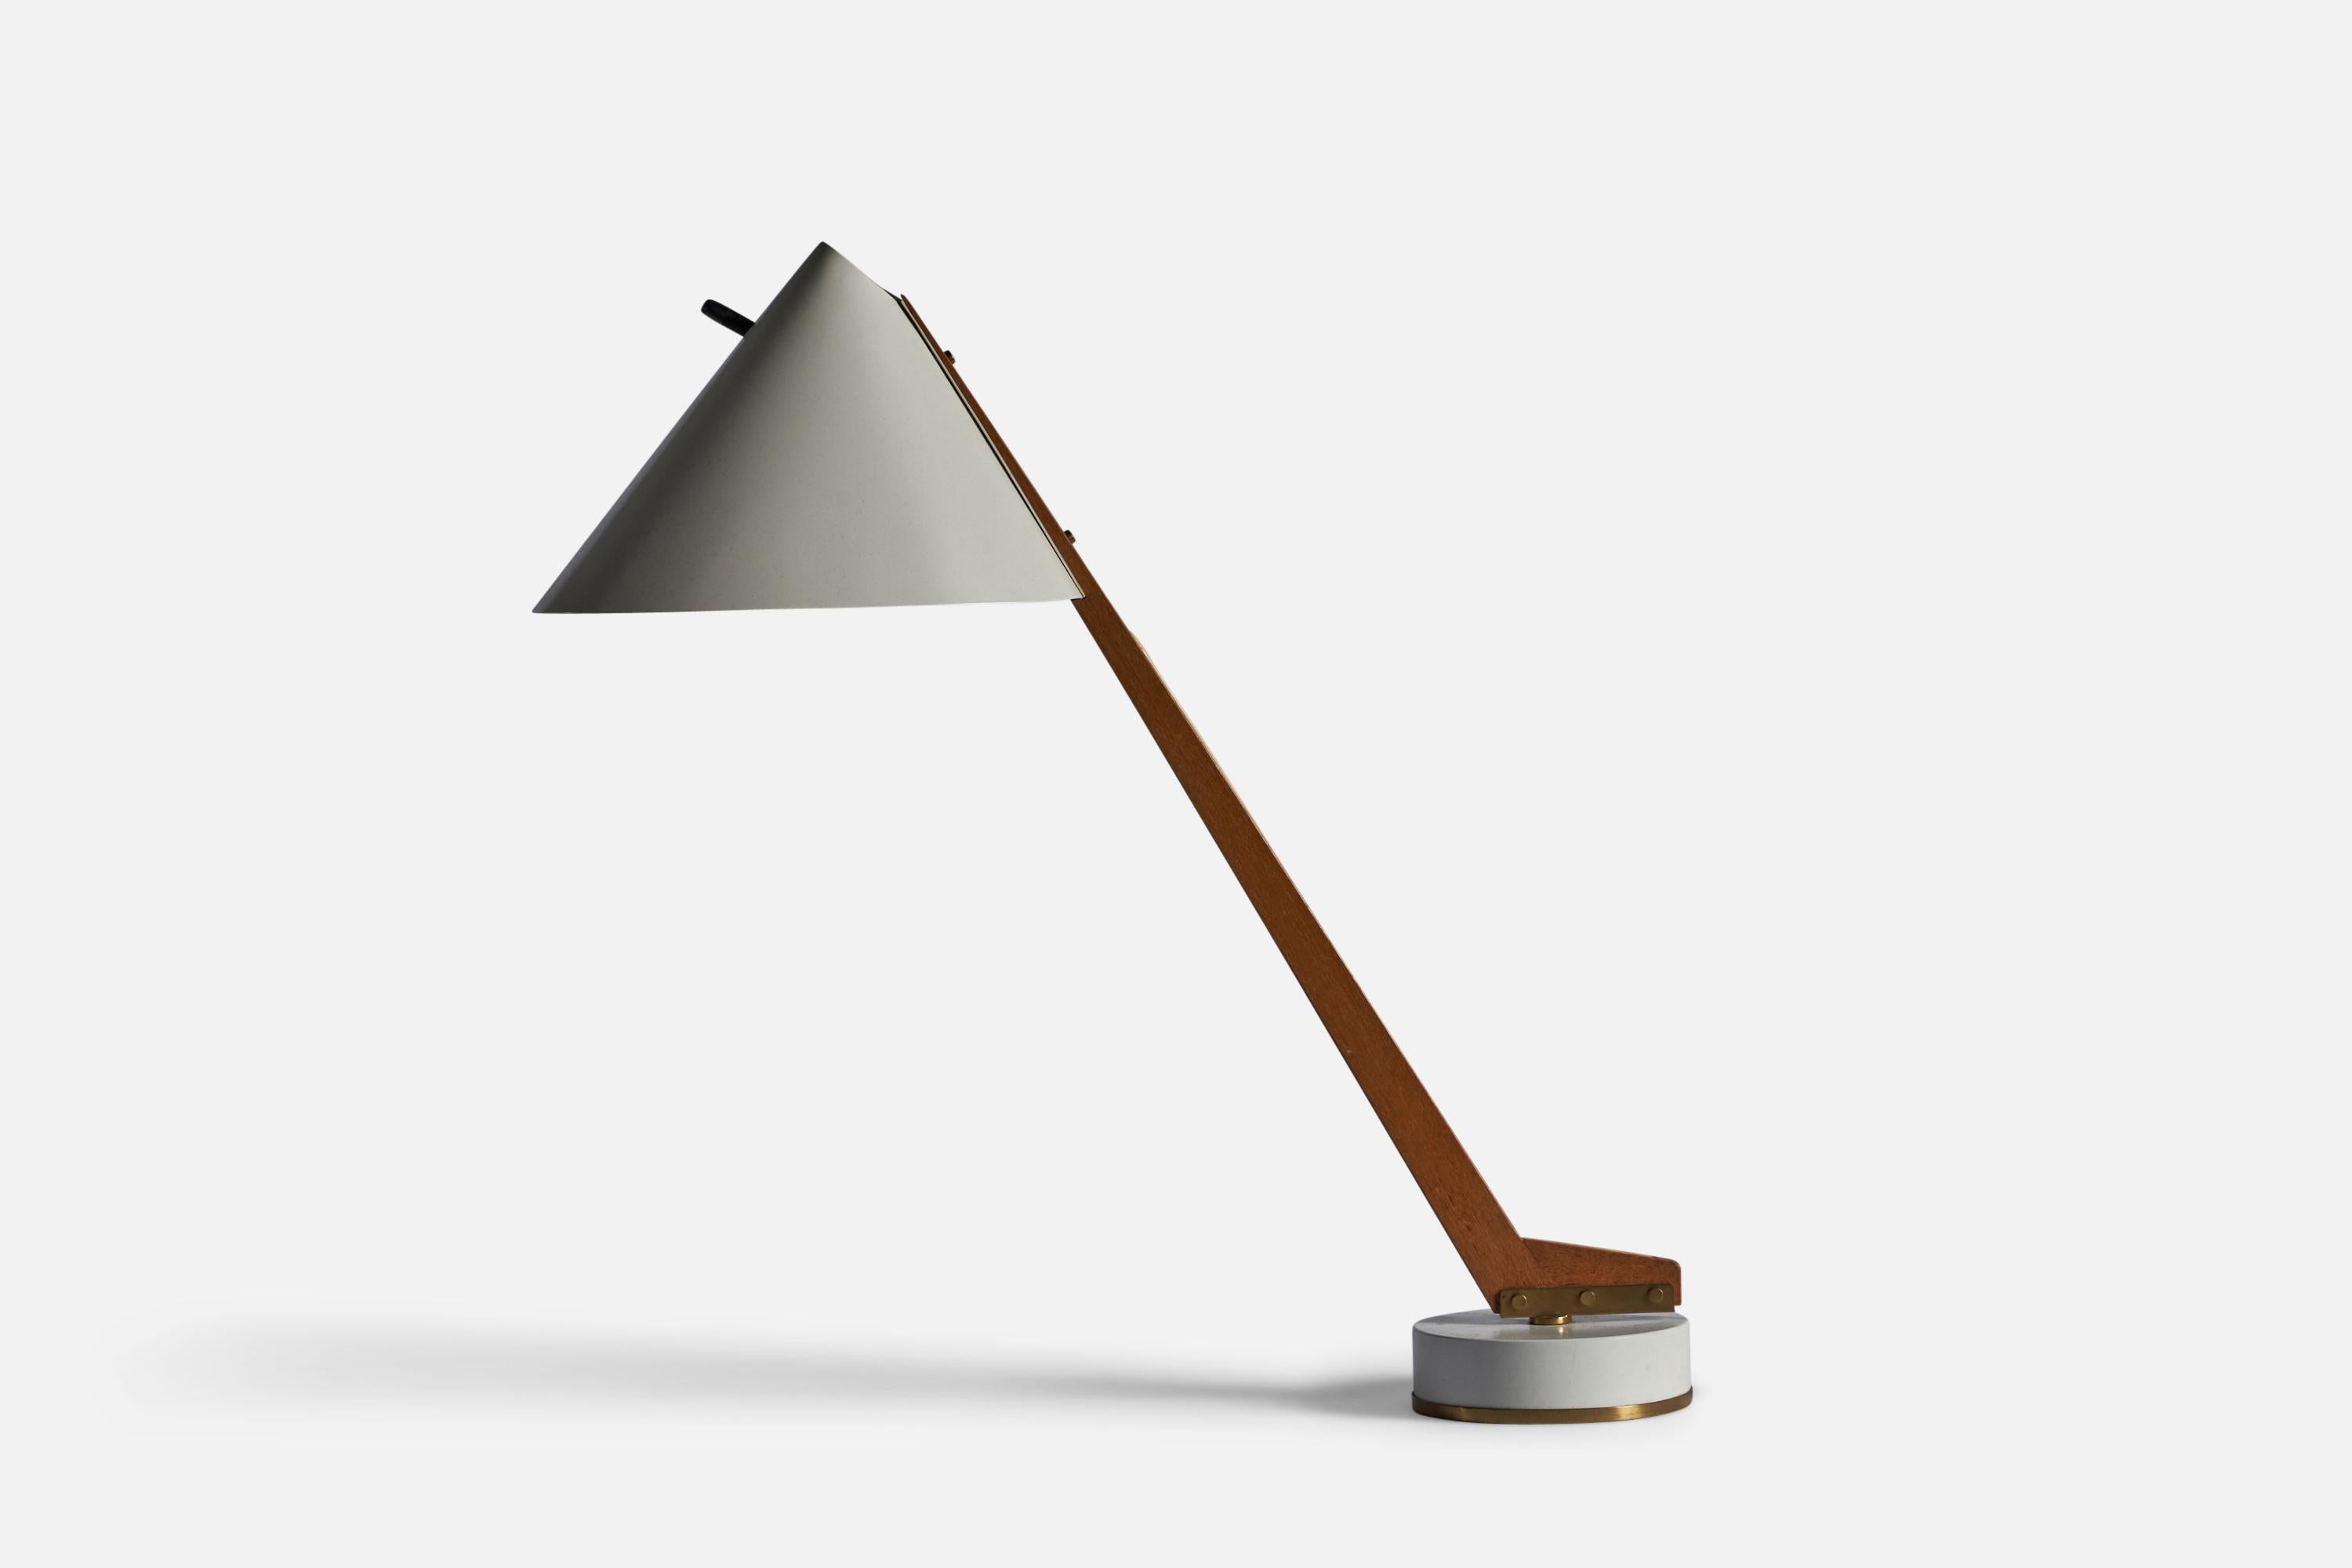 Lampe de table en laiton, teck et métal laqué blanc, conçue et produite par Hans-Agne Agnes, A.I.Design/One, C.C., Suède, vers les années 1960.

Dimensions totales : 24